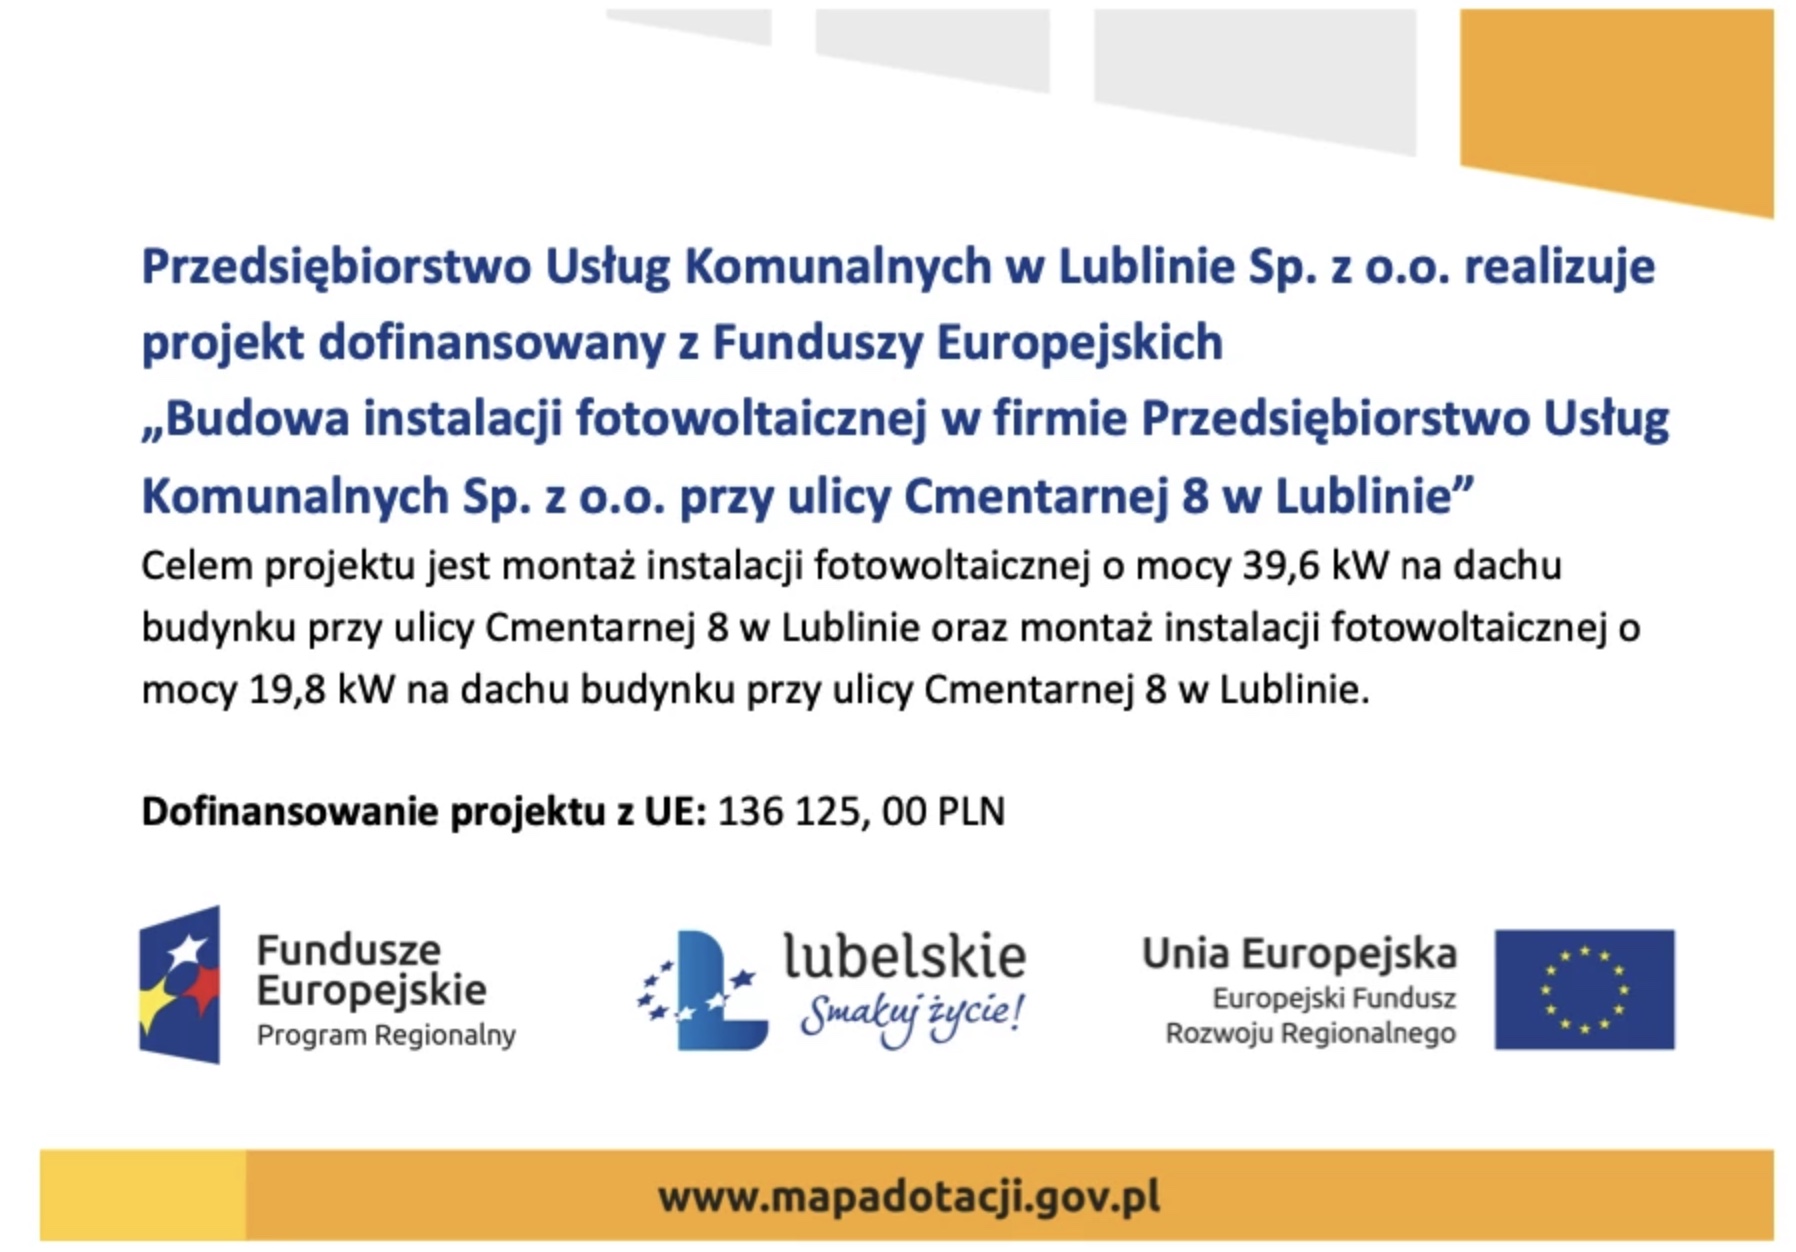 Budowa instalacji fotowoltaicznej w firmie Przedsiębiorstwo Usług Komunalnych Sp. z o.o. przy ulicy Cmentarnej 8 w Lublinie